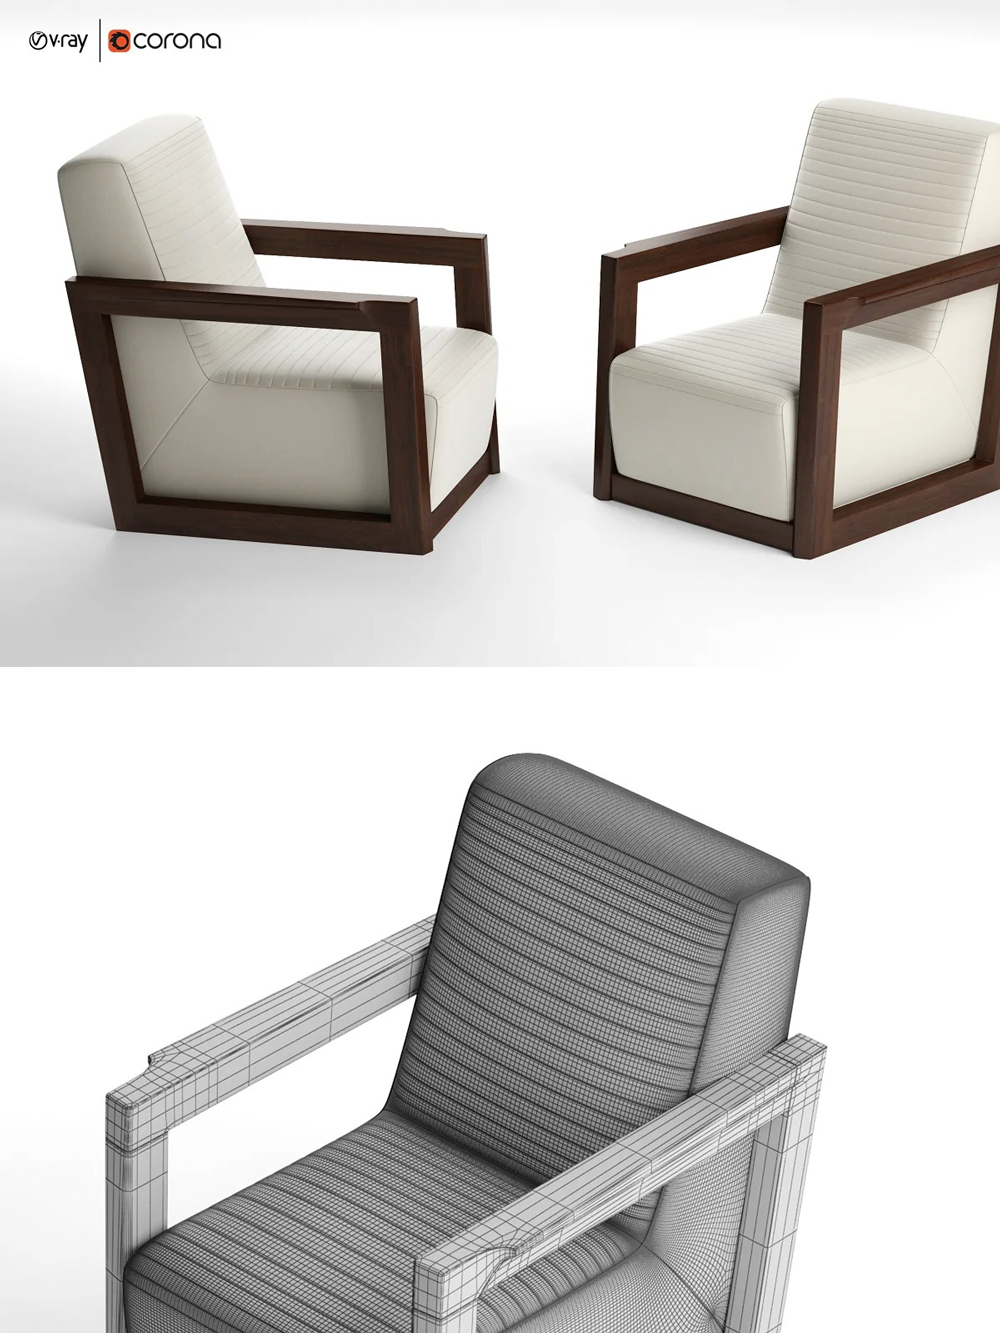 Rendering of an elegant armchair 3d model